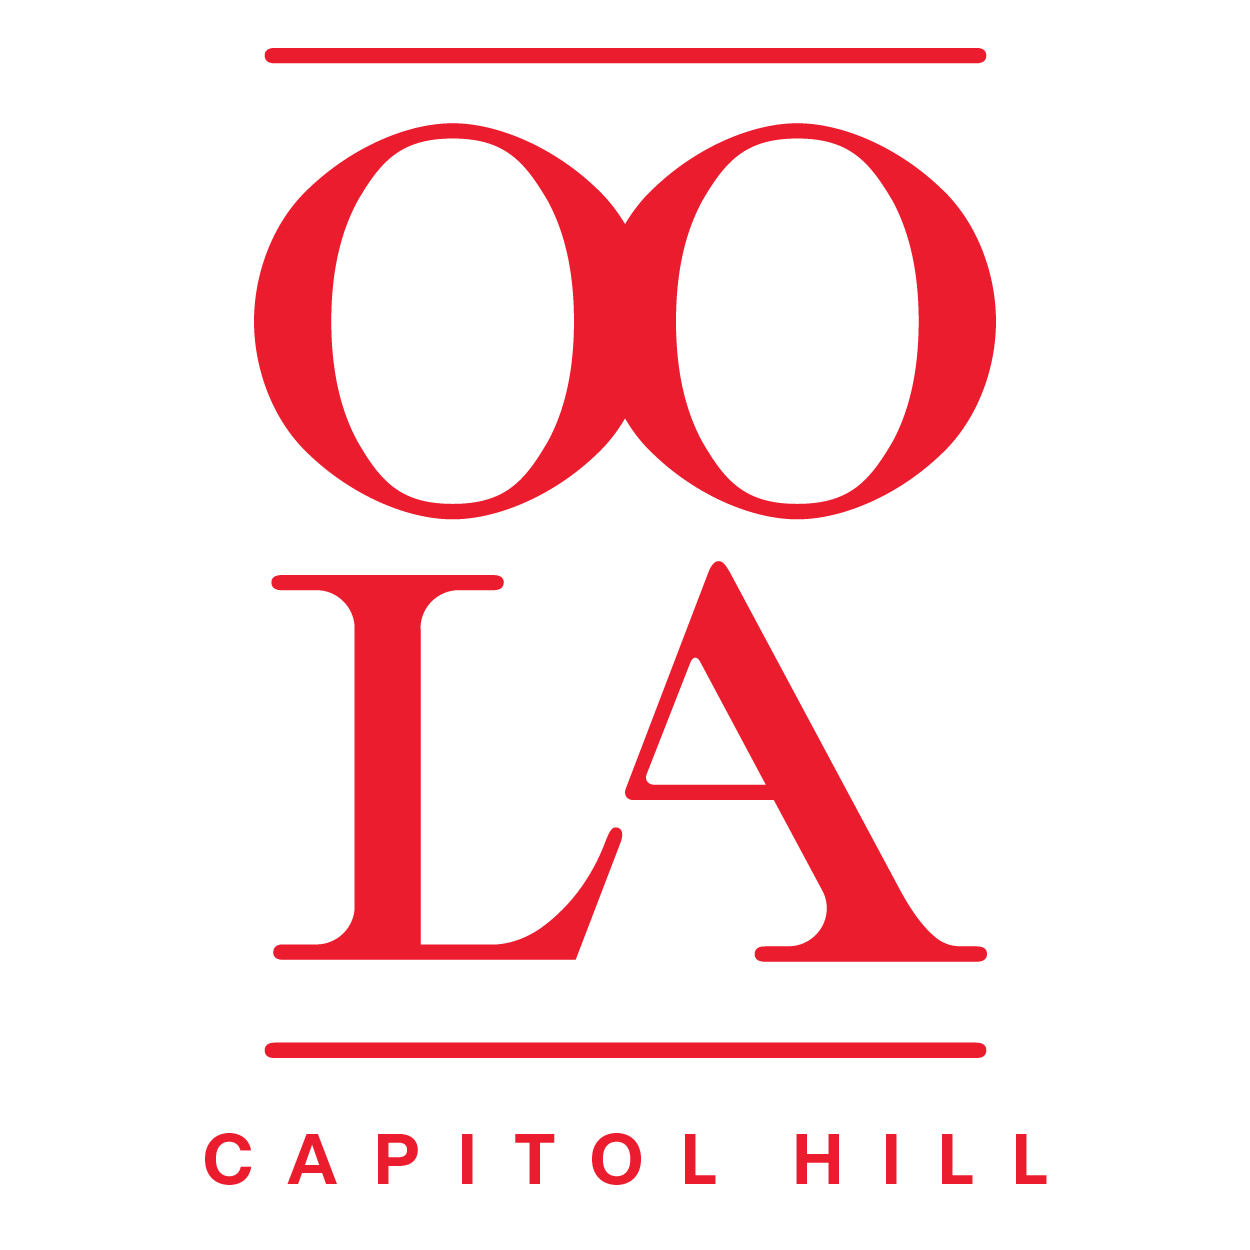 OOLA Capitol Hill